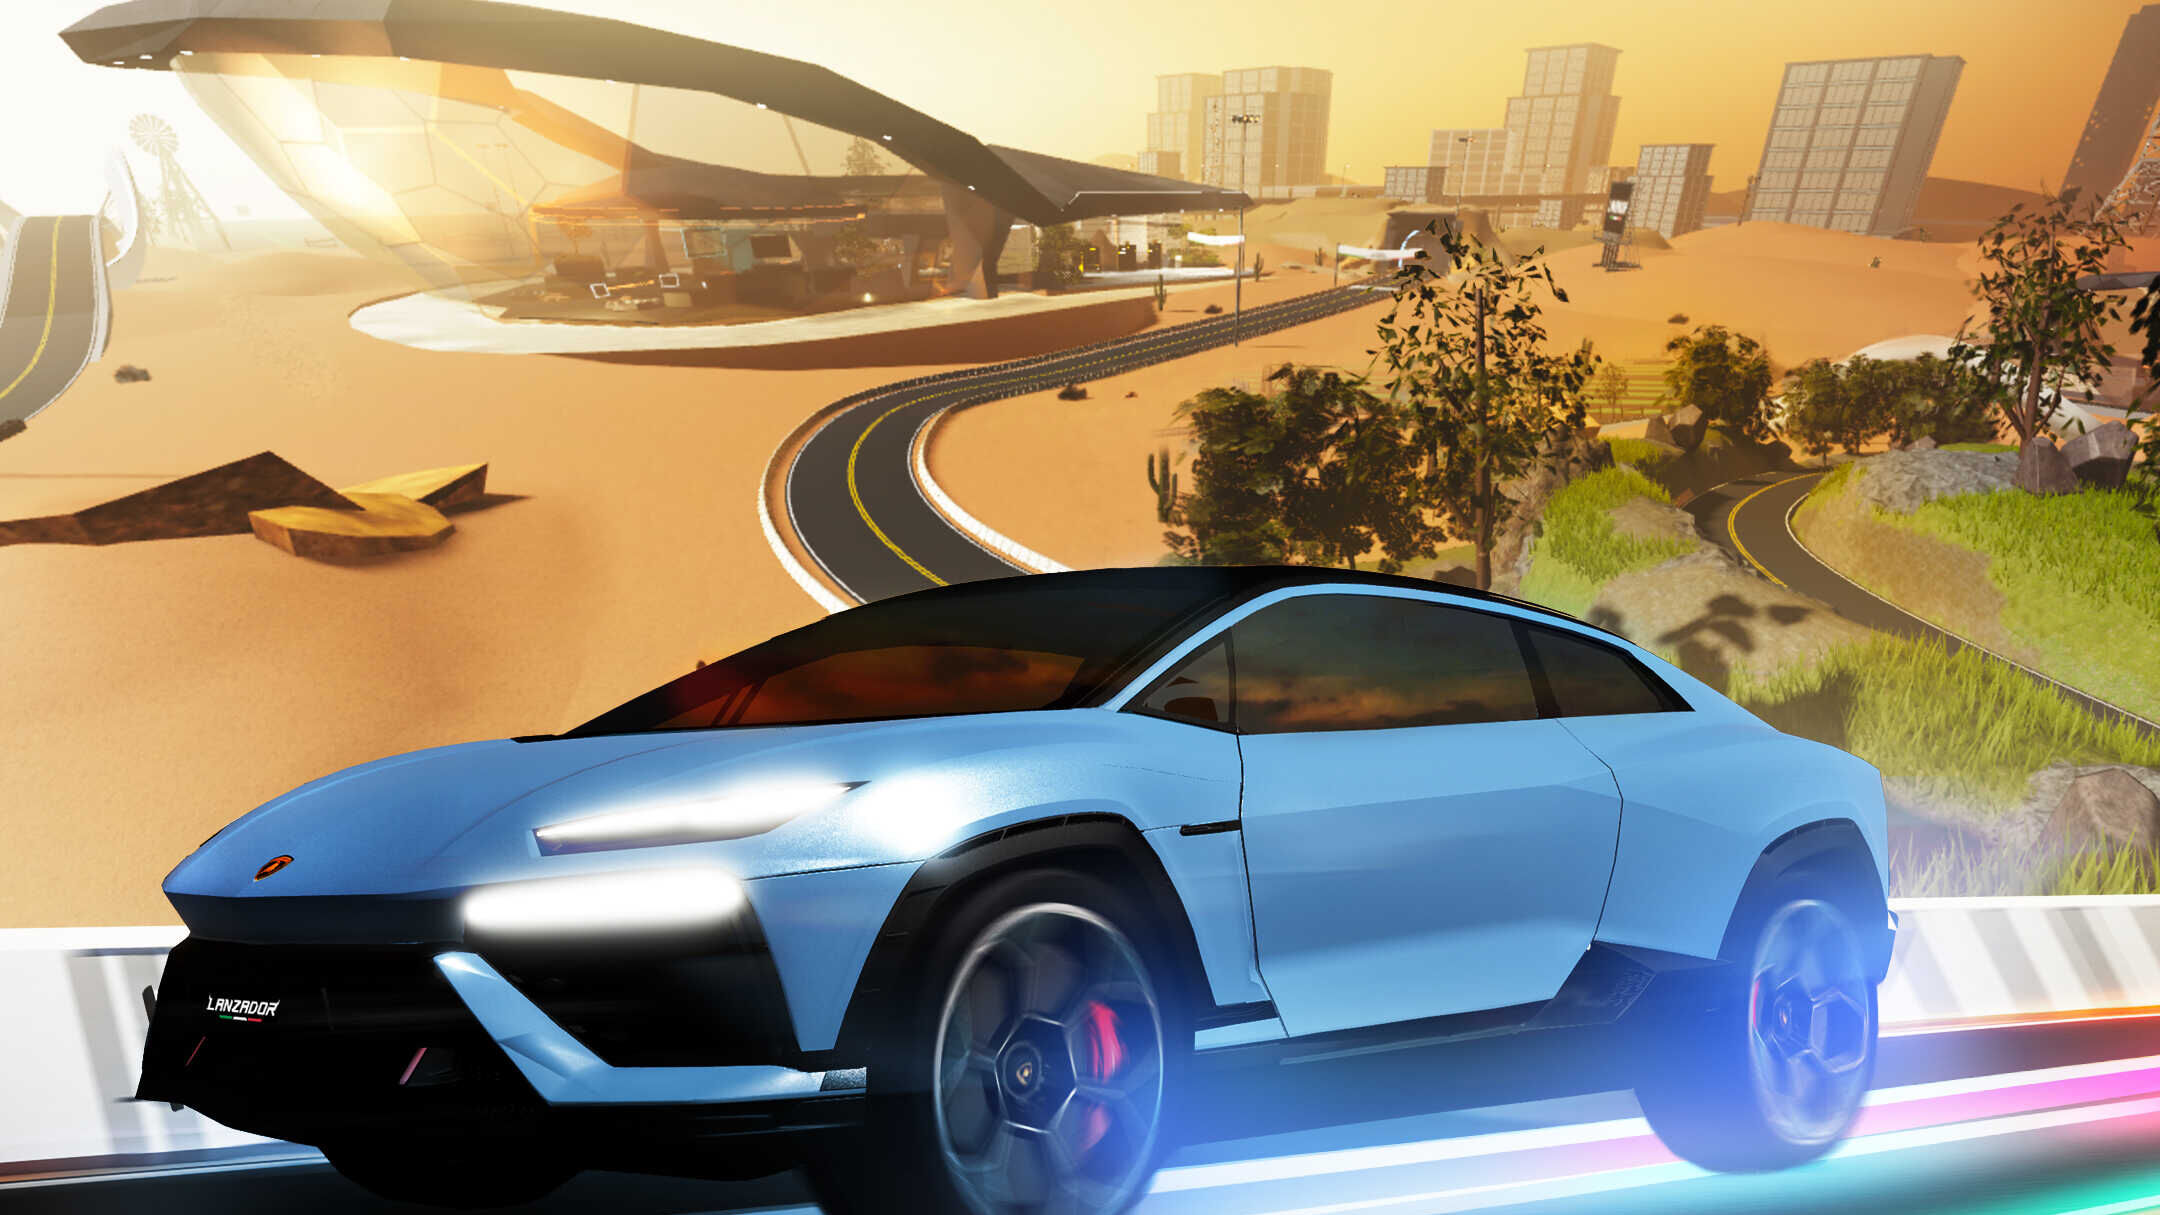 Lanzador: электрычны суперкар Automobili Lamborghini знаходзіцца на Roblox, 3D-платформе з апусканнем